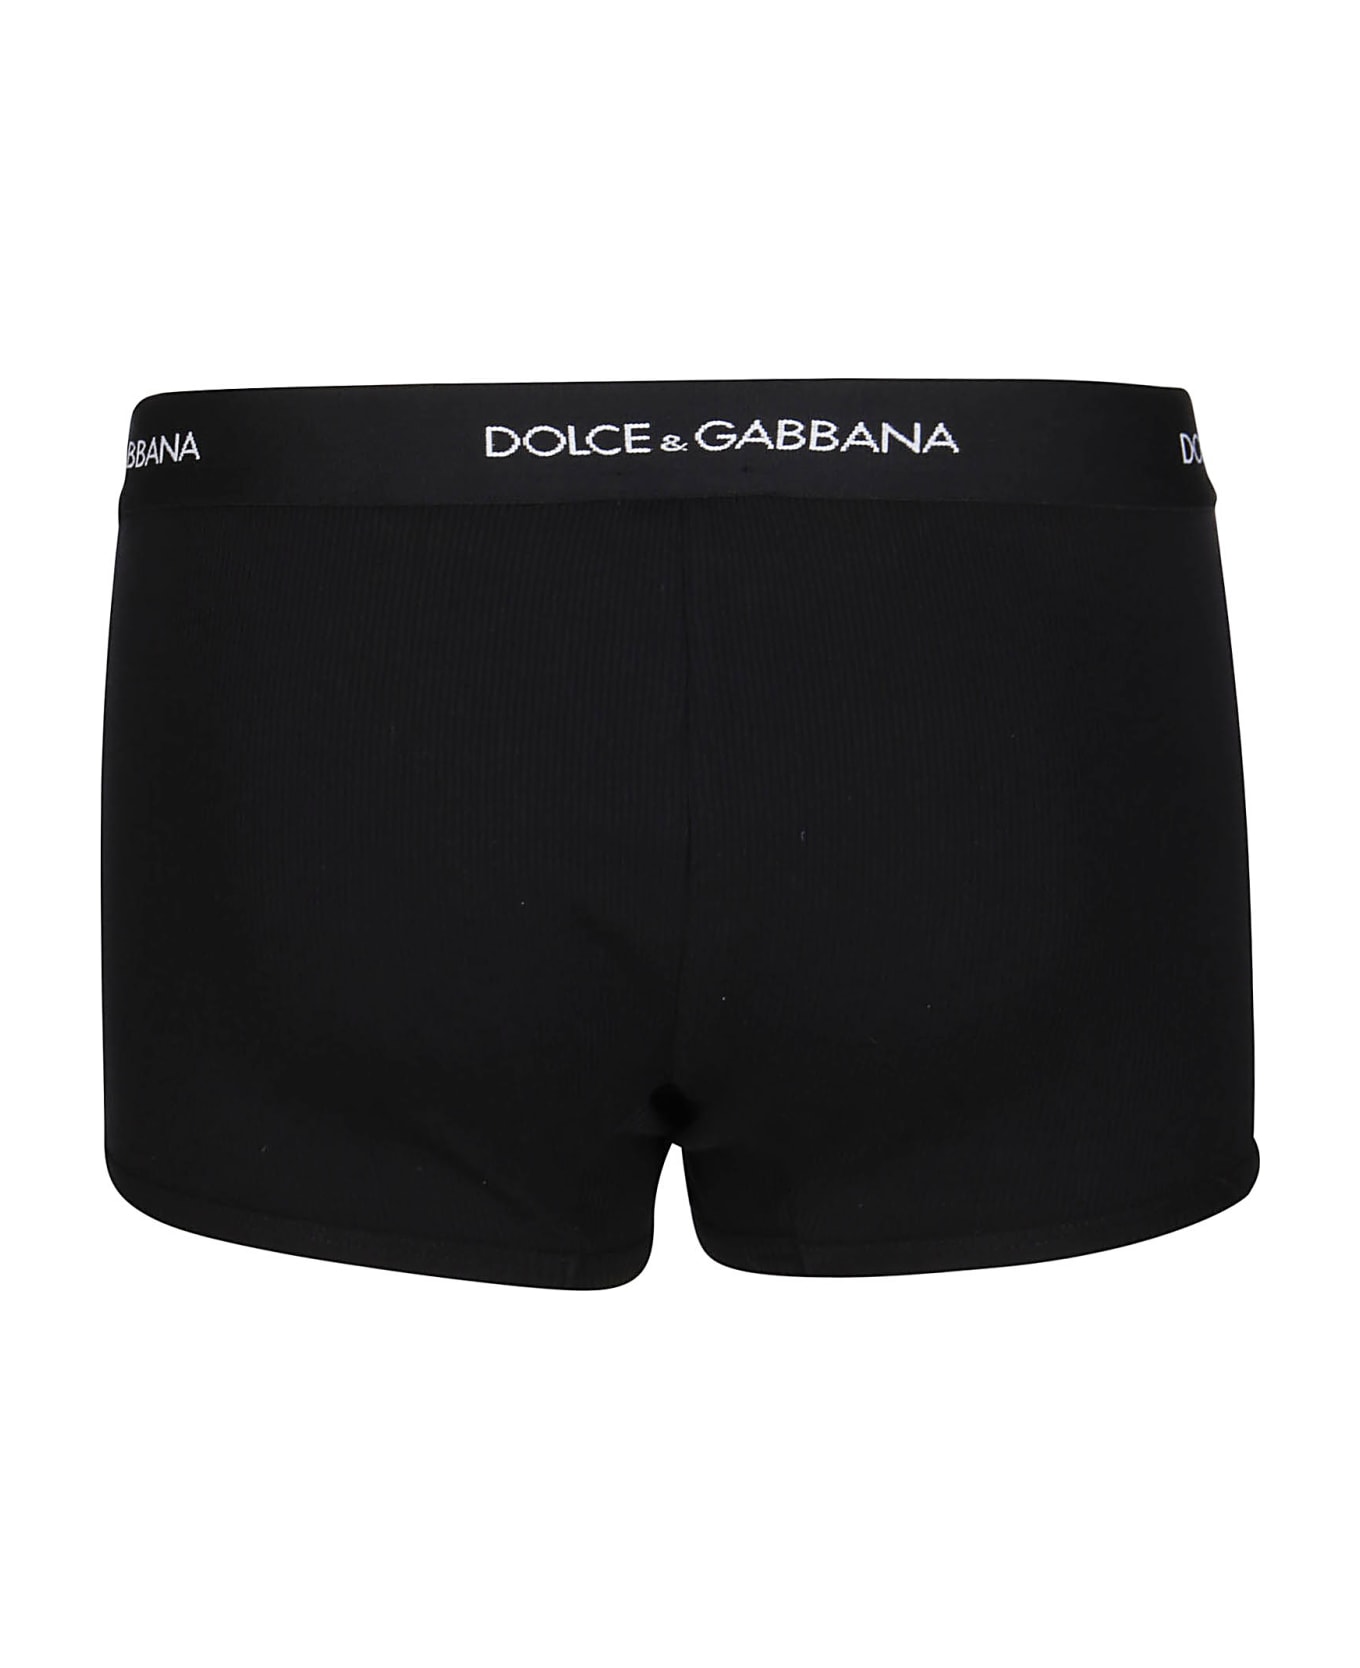 Dolce & Gabbana Black Cotton Boxers - NERO